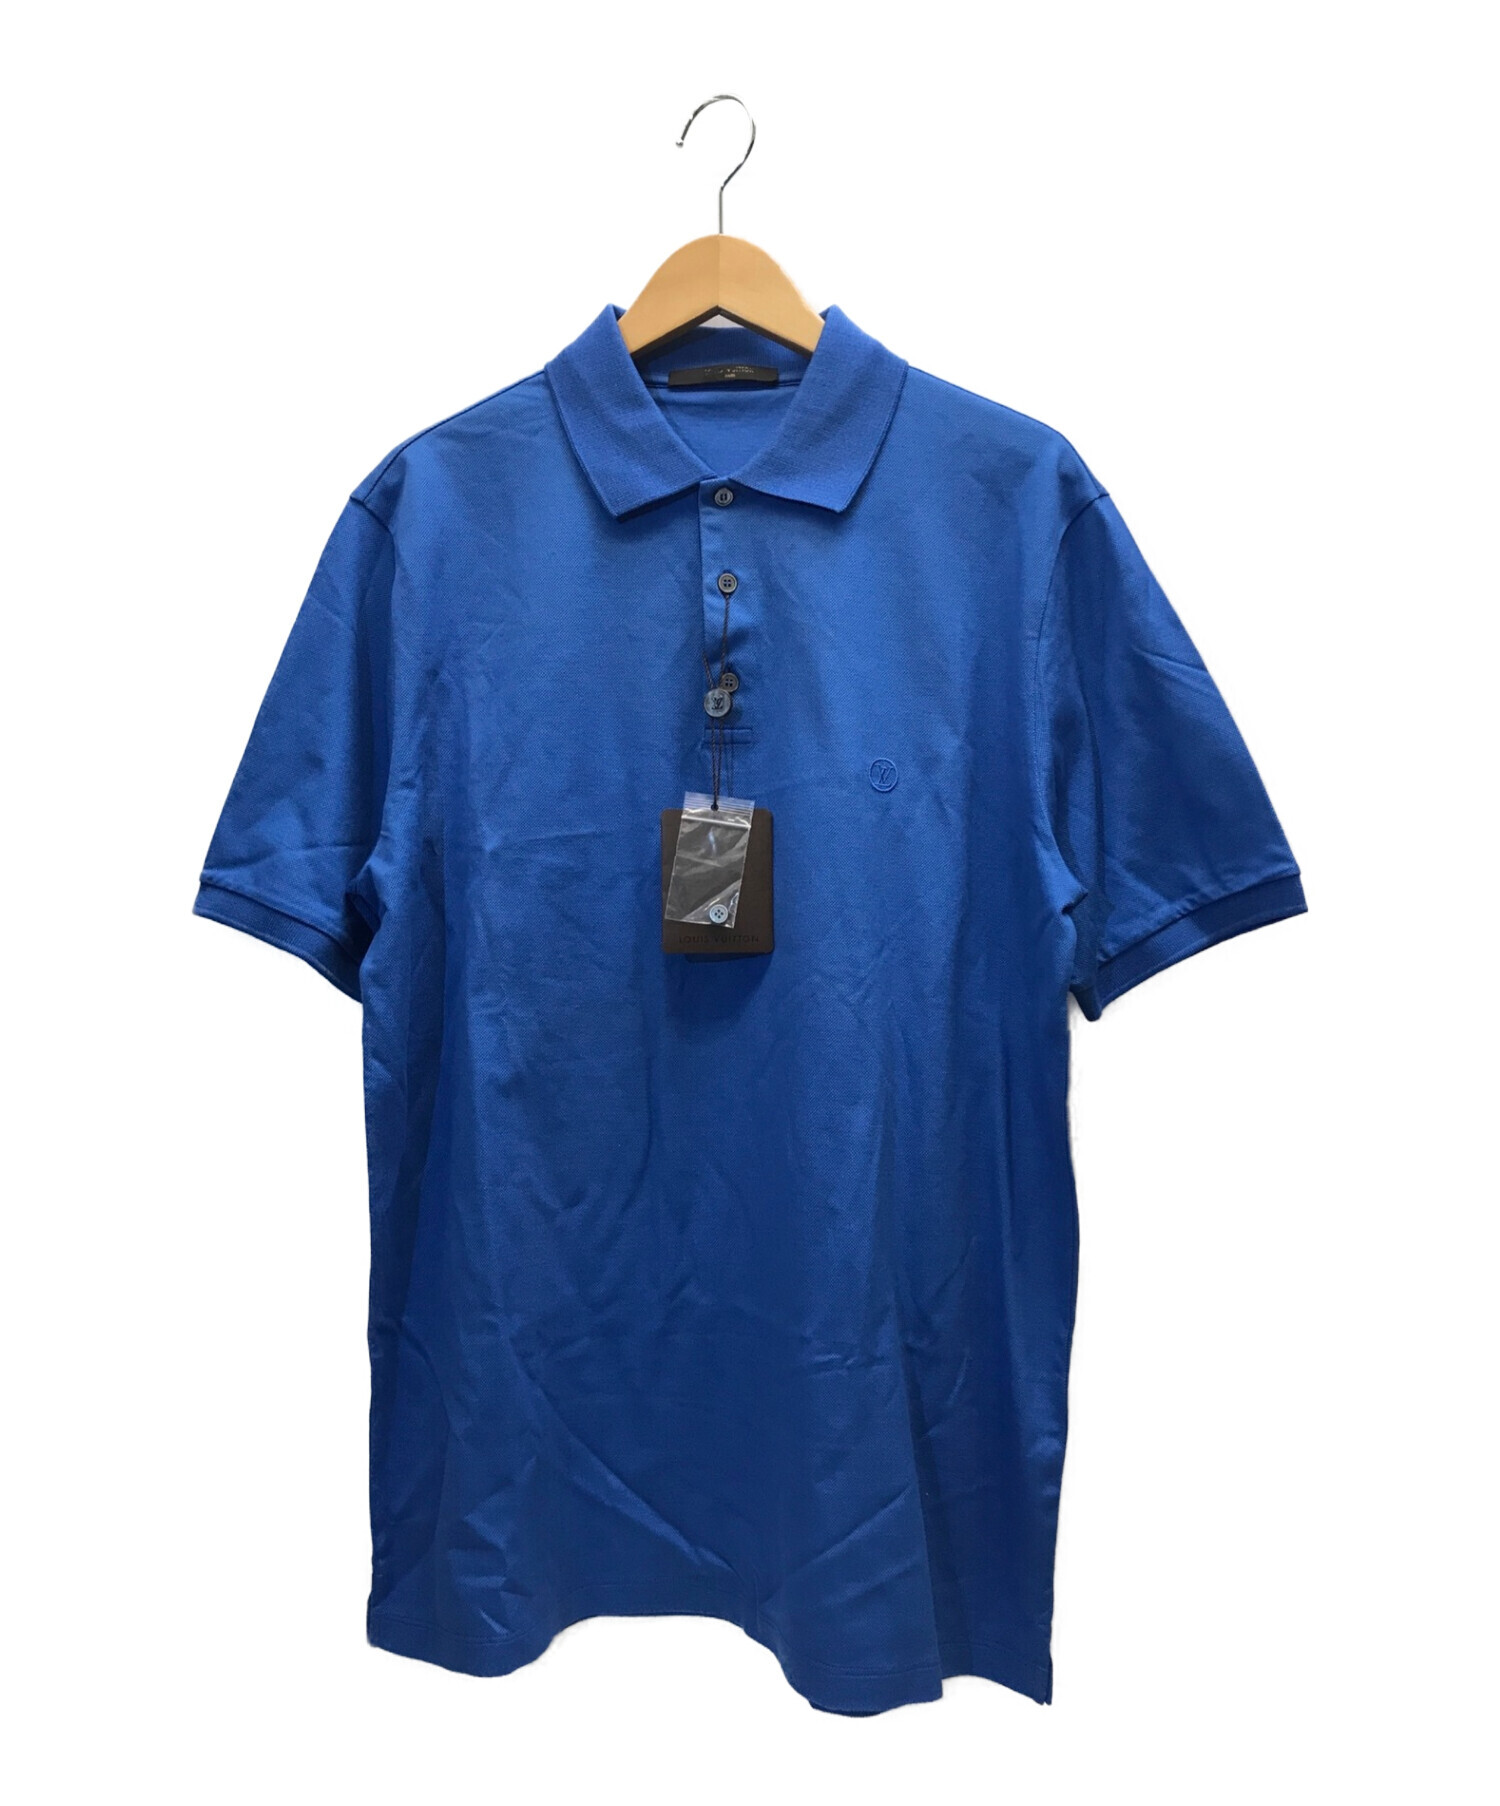 特価低価 ルイヴィトン 半袖ポロシャツ 87Bfl-m70524404529 actualizate.ar